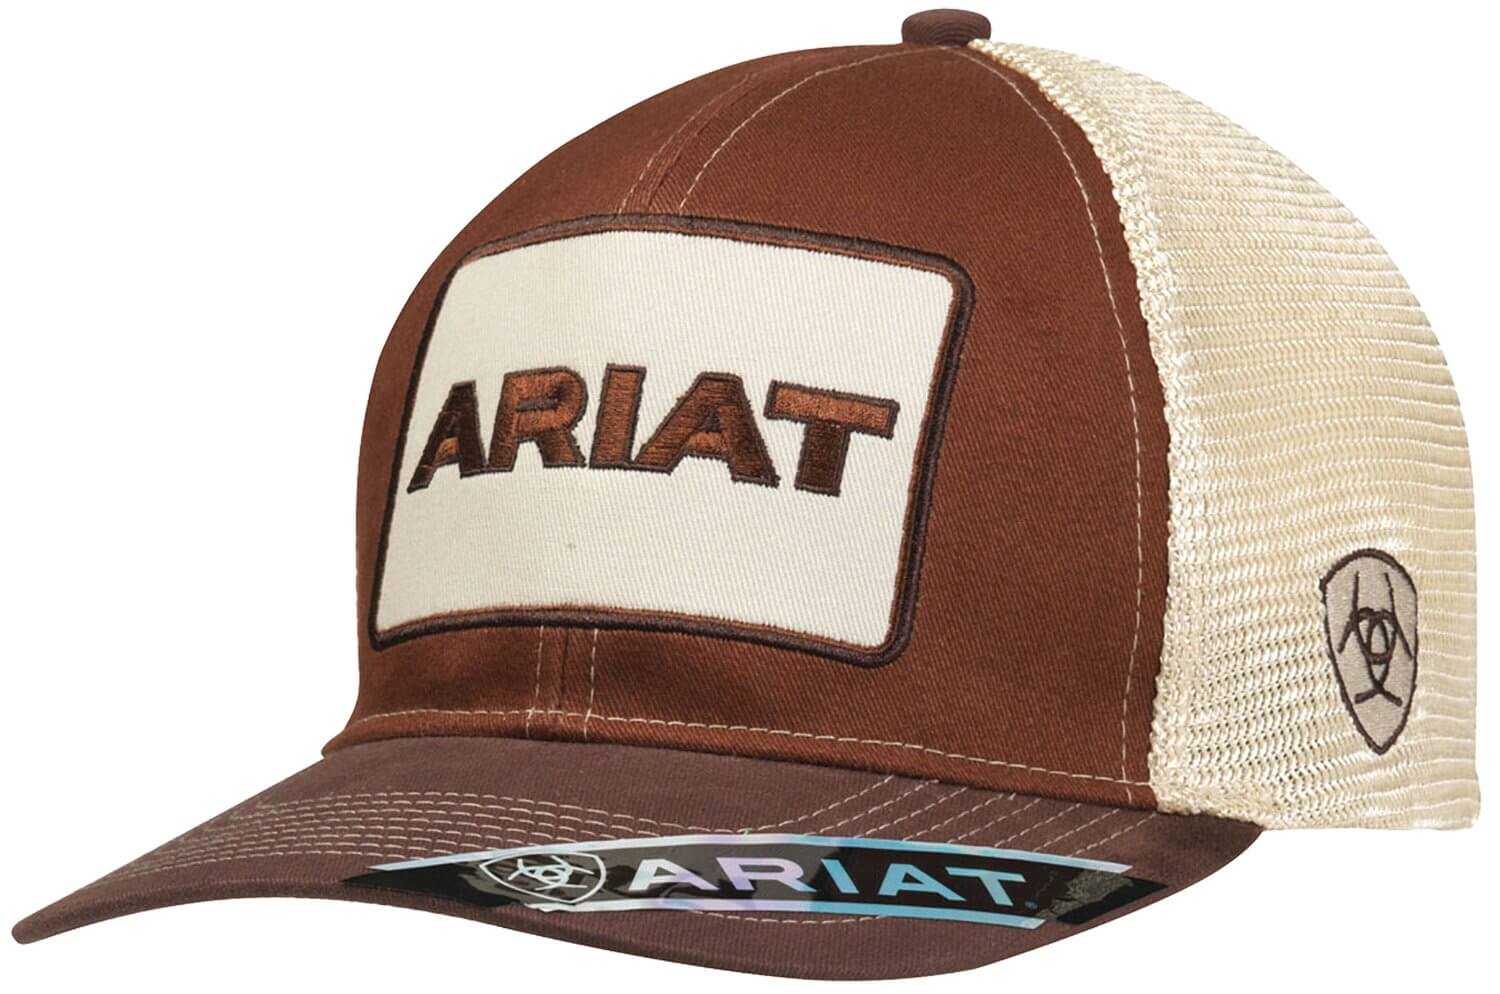 Ariat Logo - Ariat Men's Logo Patch Cap W Cream Mesh Back